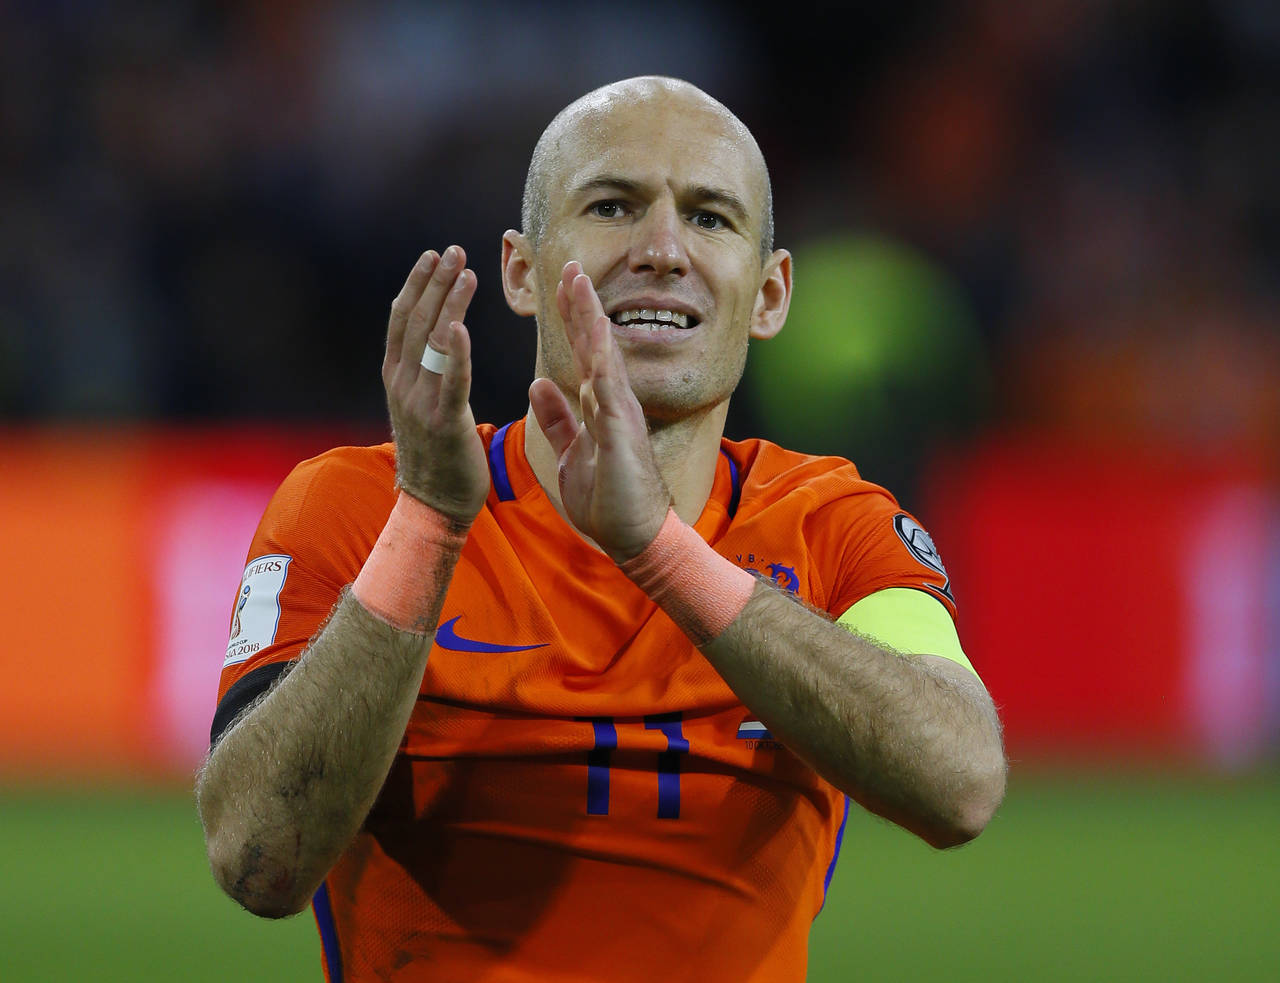 El jugador holandés dijo adiós ayer a la selección de su país. Robben se despide tras ser eliminado